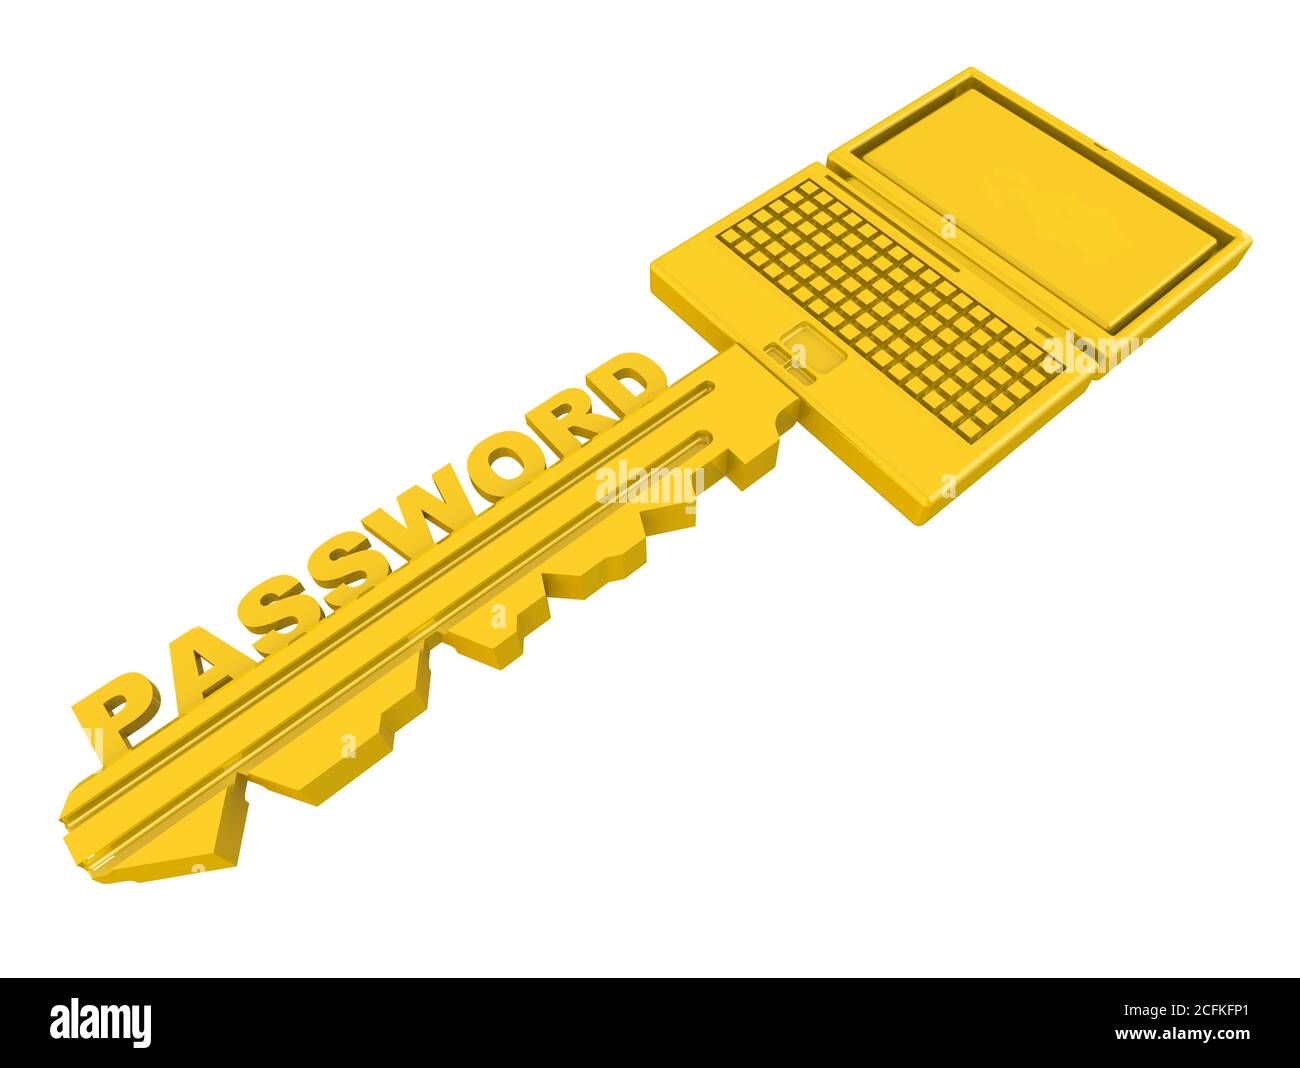 Clé d'accès aux informations personnelles. Clé dorée sous forme de bloc-notes avec mot DE PASSE isolé sur fond blanc. Illustration 3D Banque D'Images